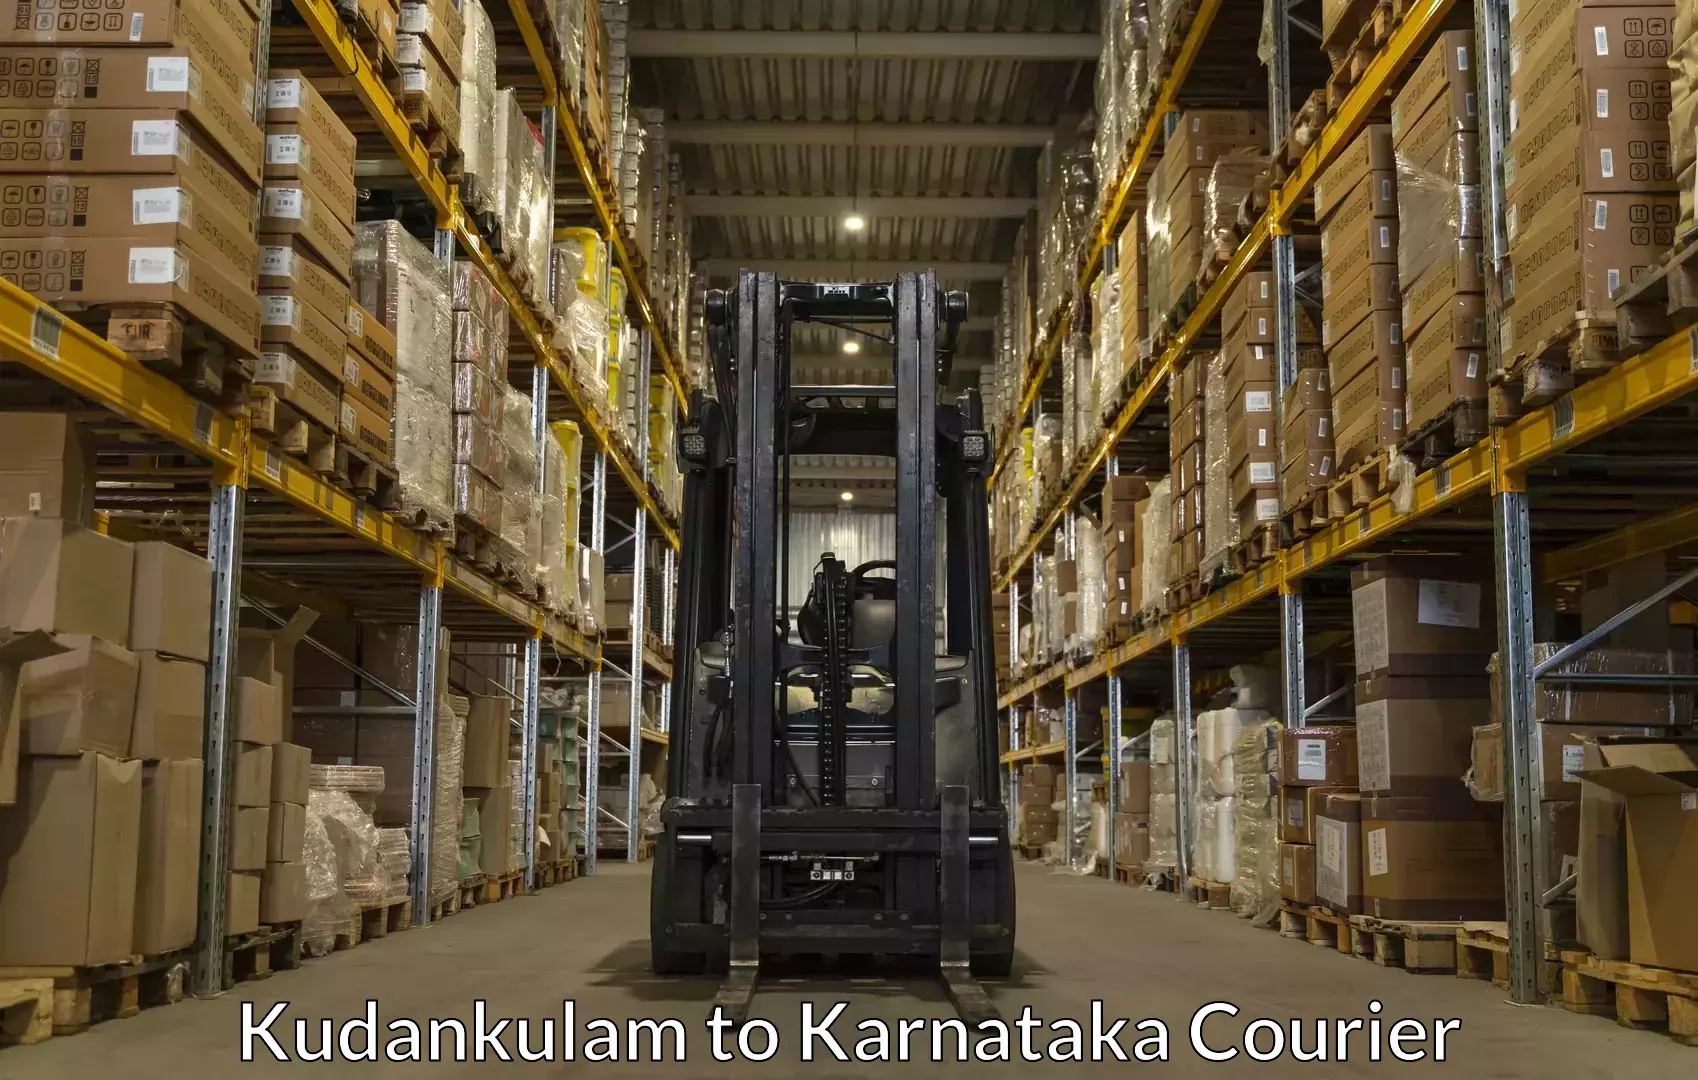 Baggage delivery solutions Kudankulam to Karnataka